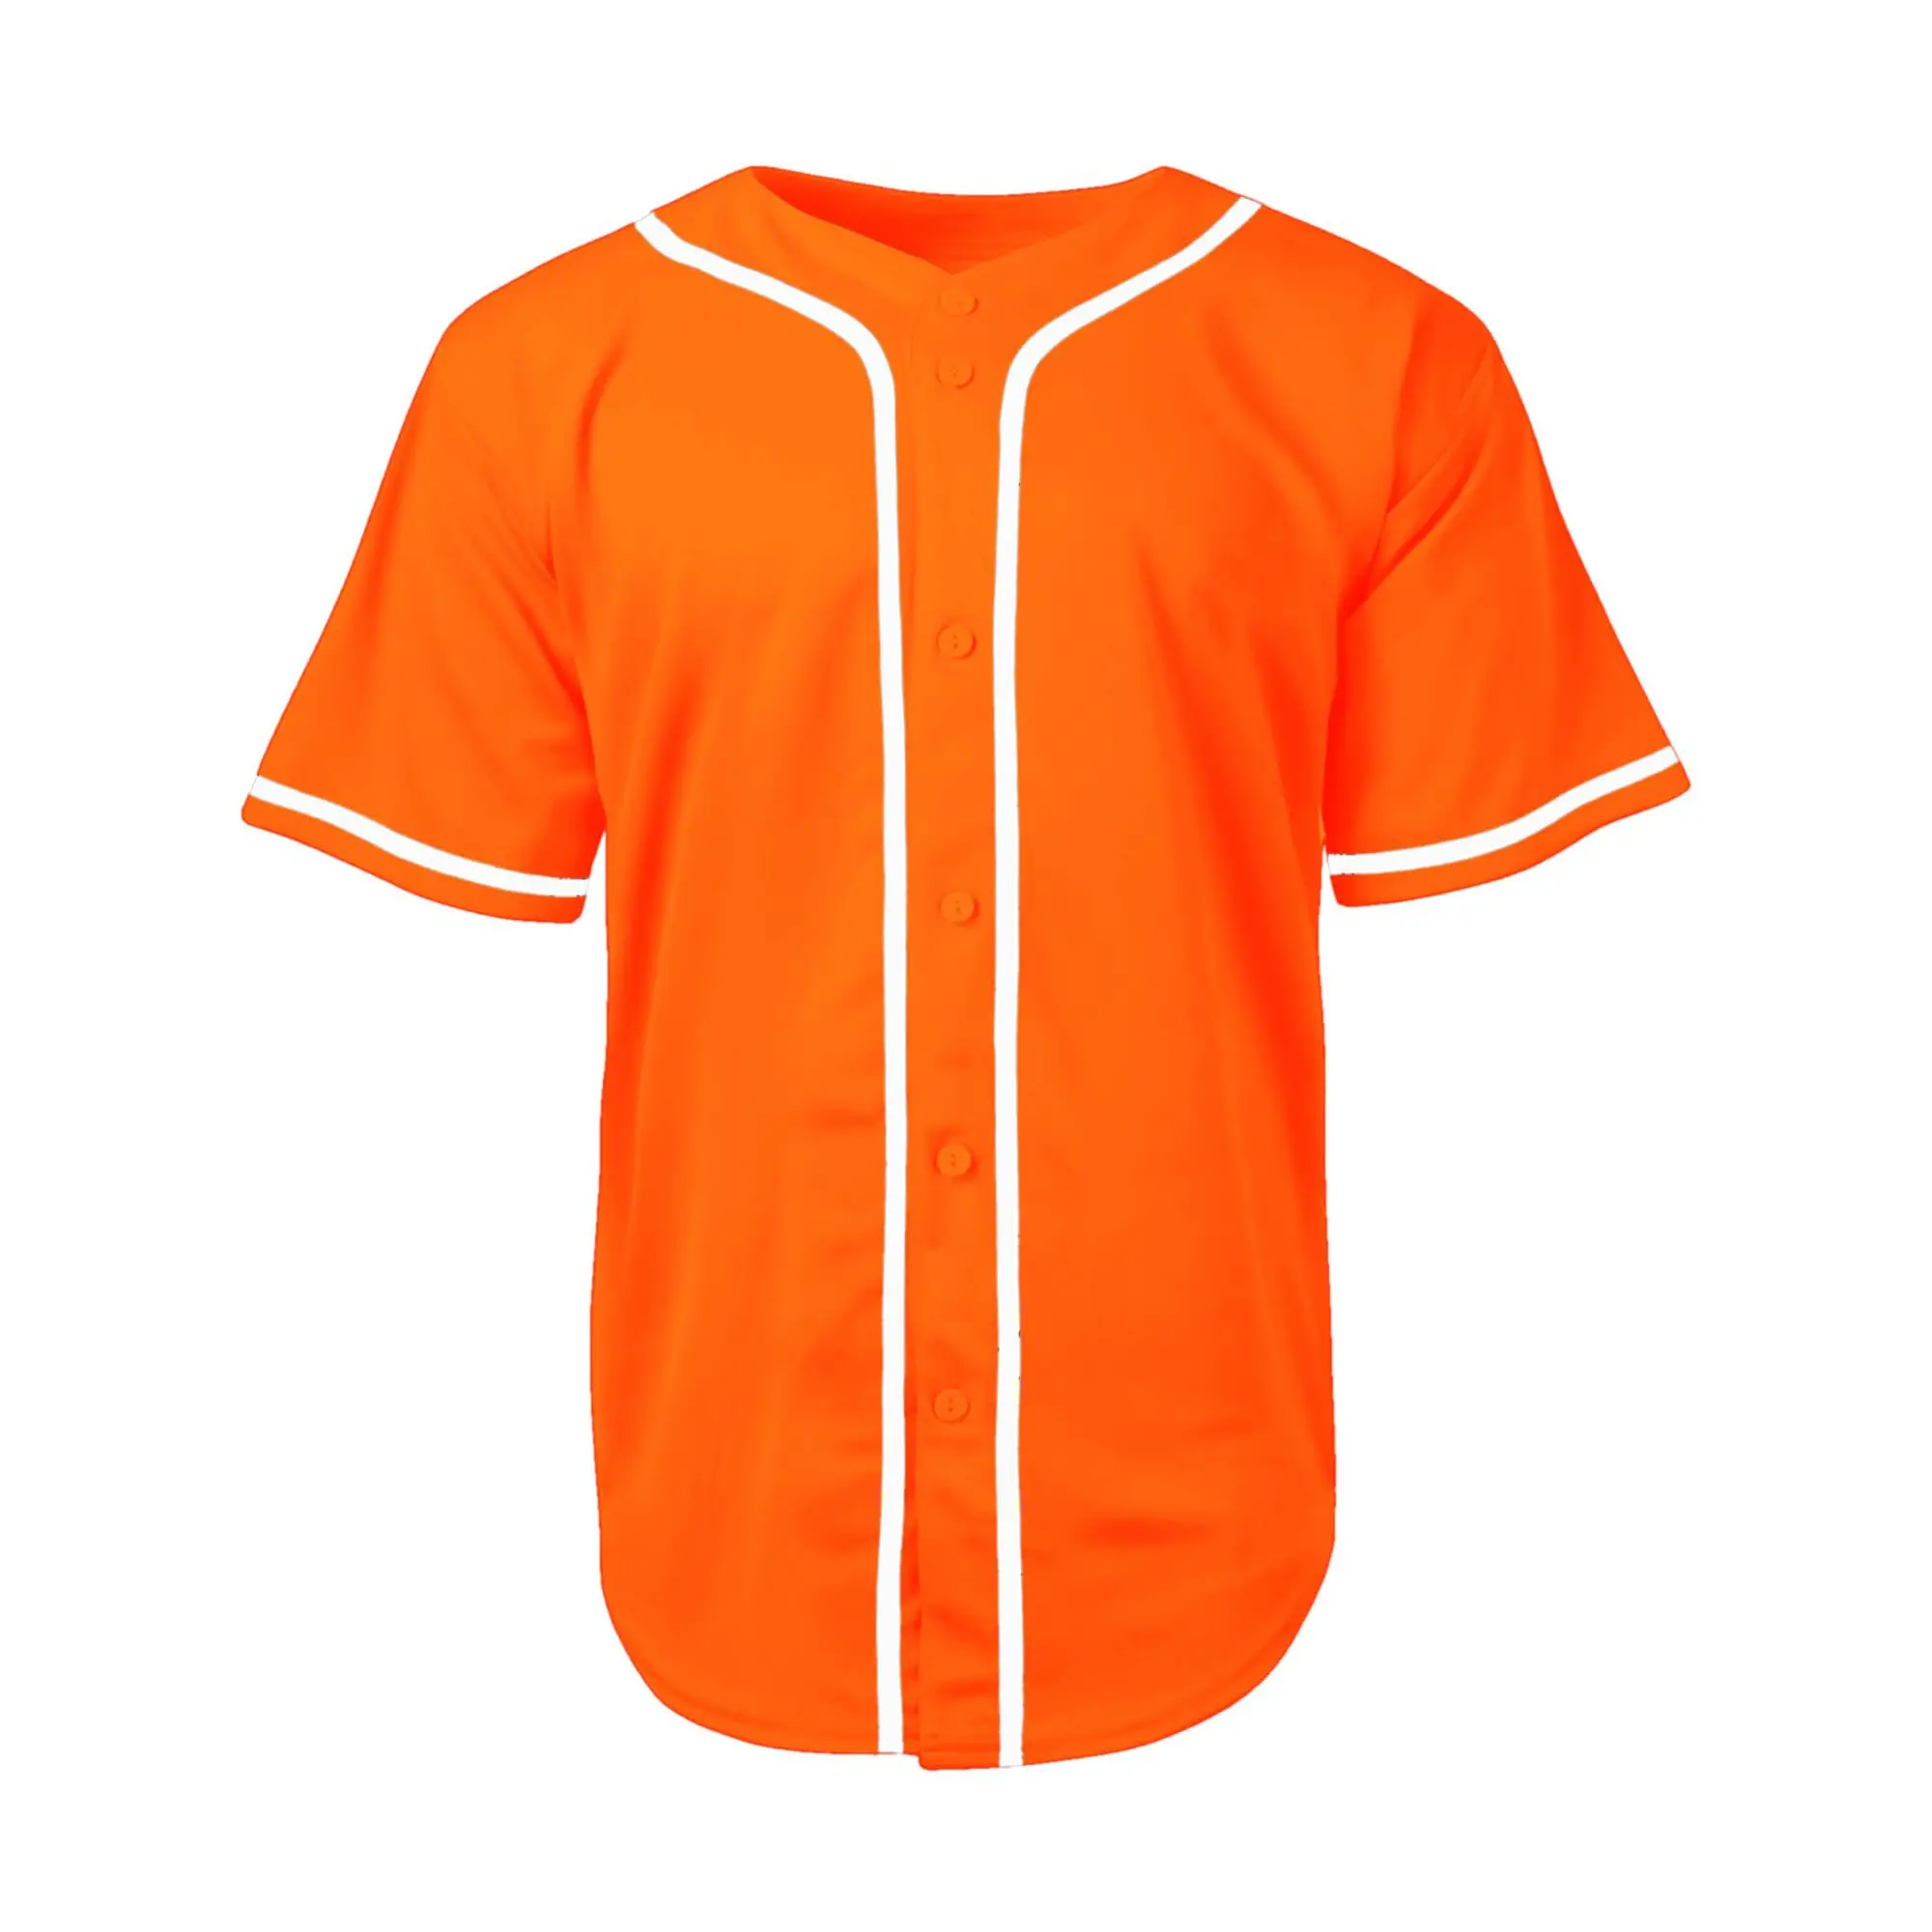 हॉट सेलिंग ओएम सेवाओं में कम मौक बेसबॉल जर्सी ग्राहक मांग खेल पहनने से आपका विचार बेसबॉल जर्सी